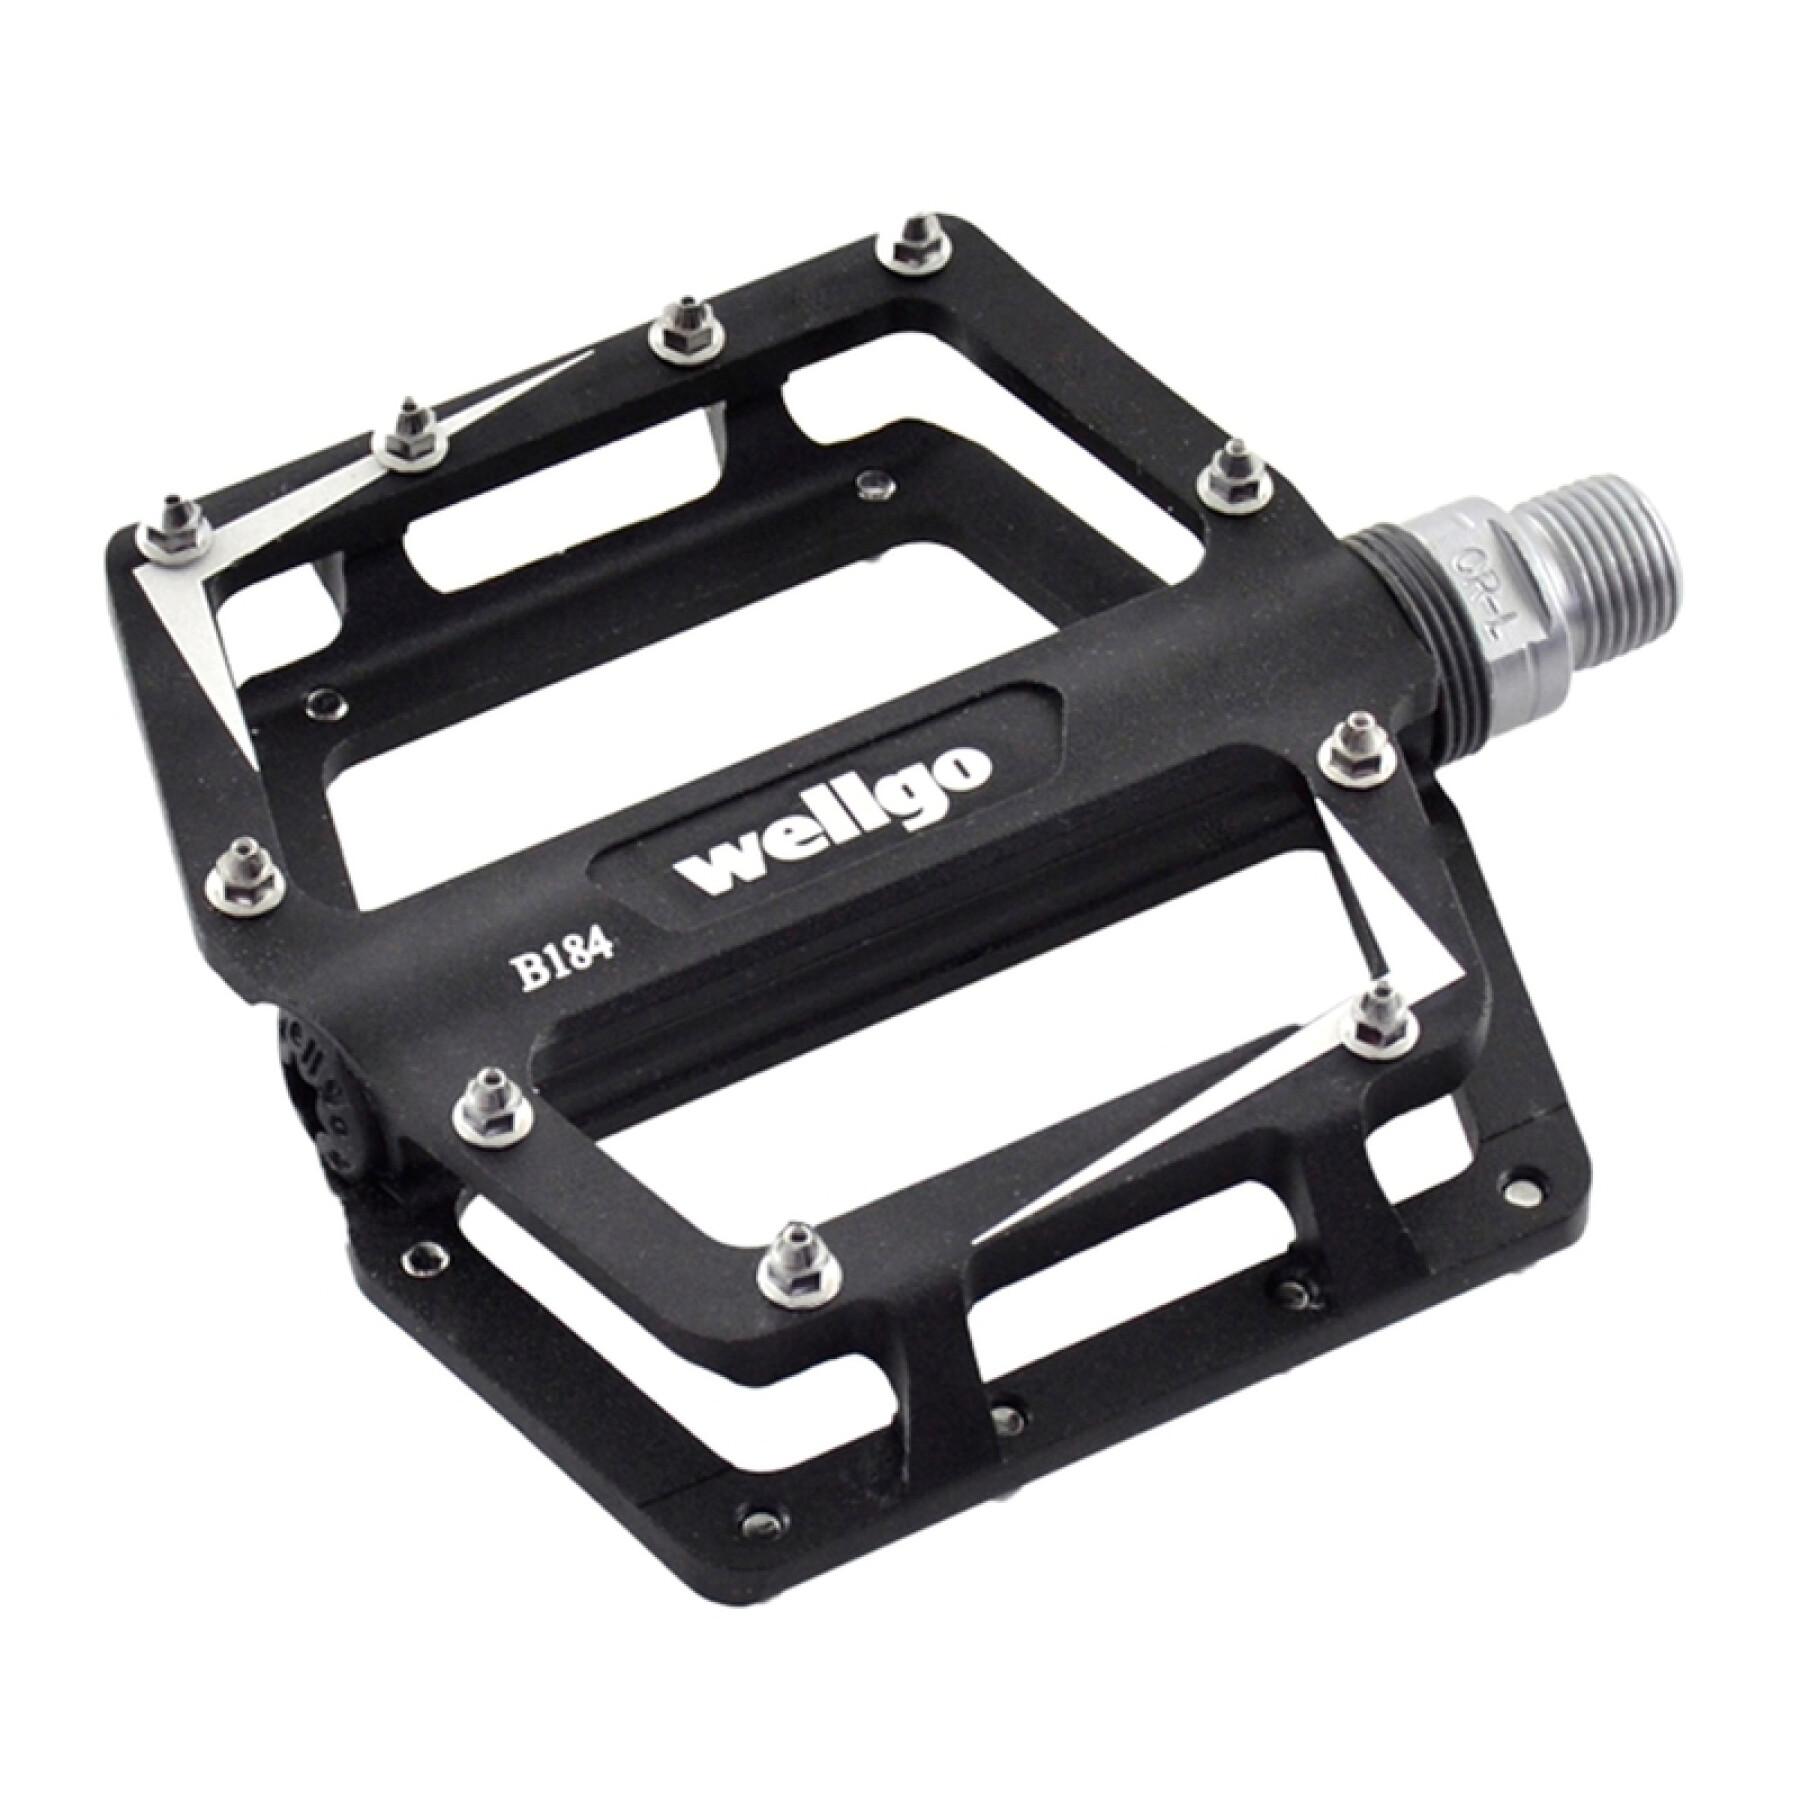 Cnc machined pedals Wellgo BMX Wellgo B184